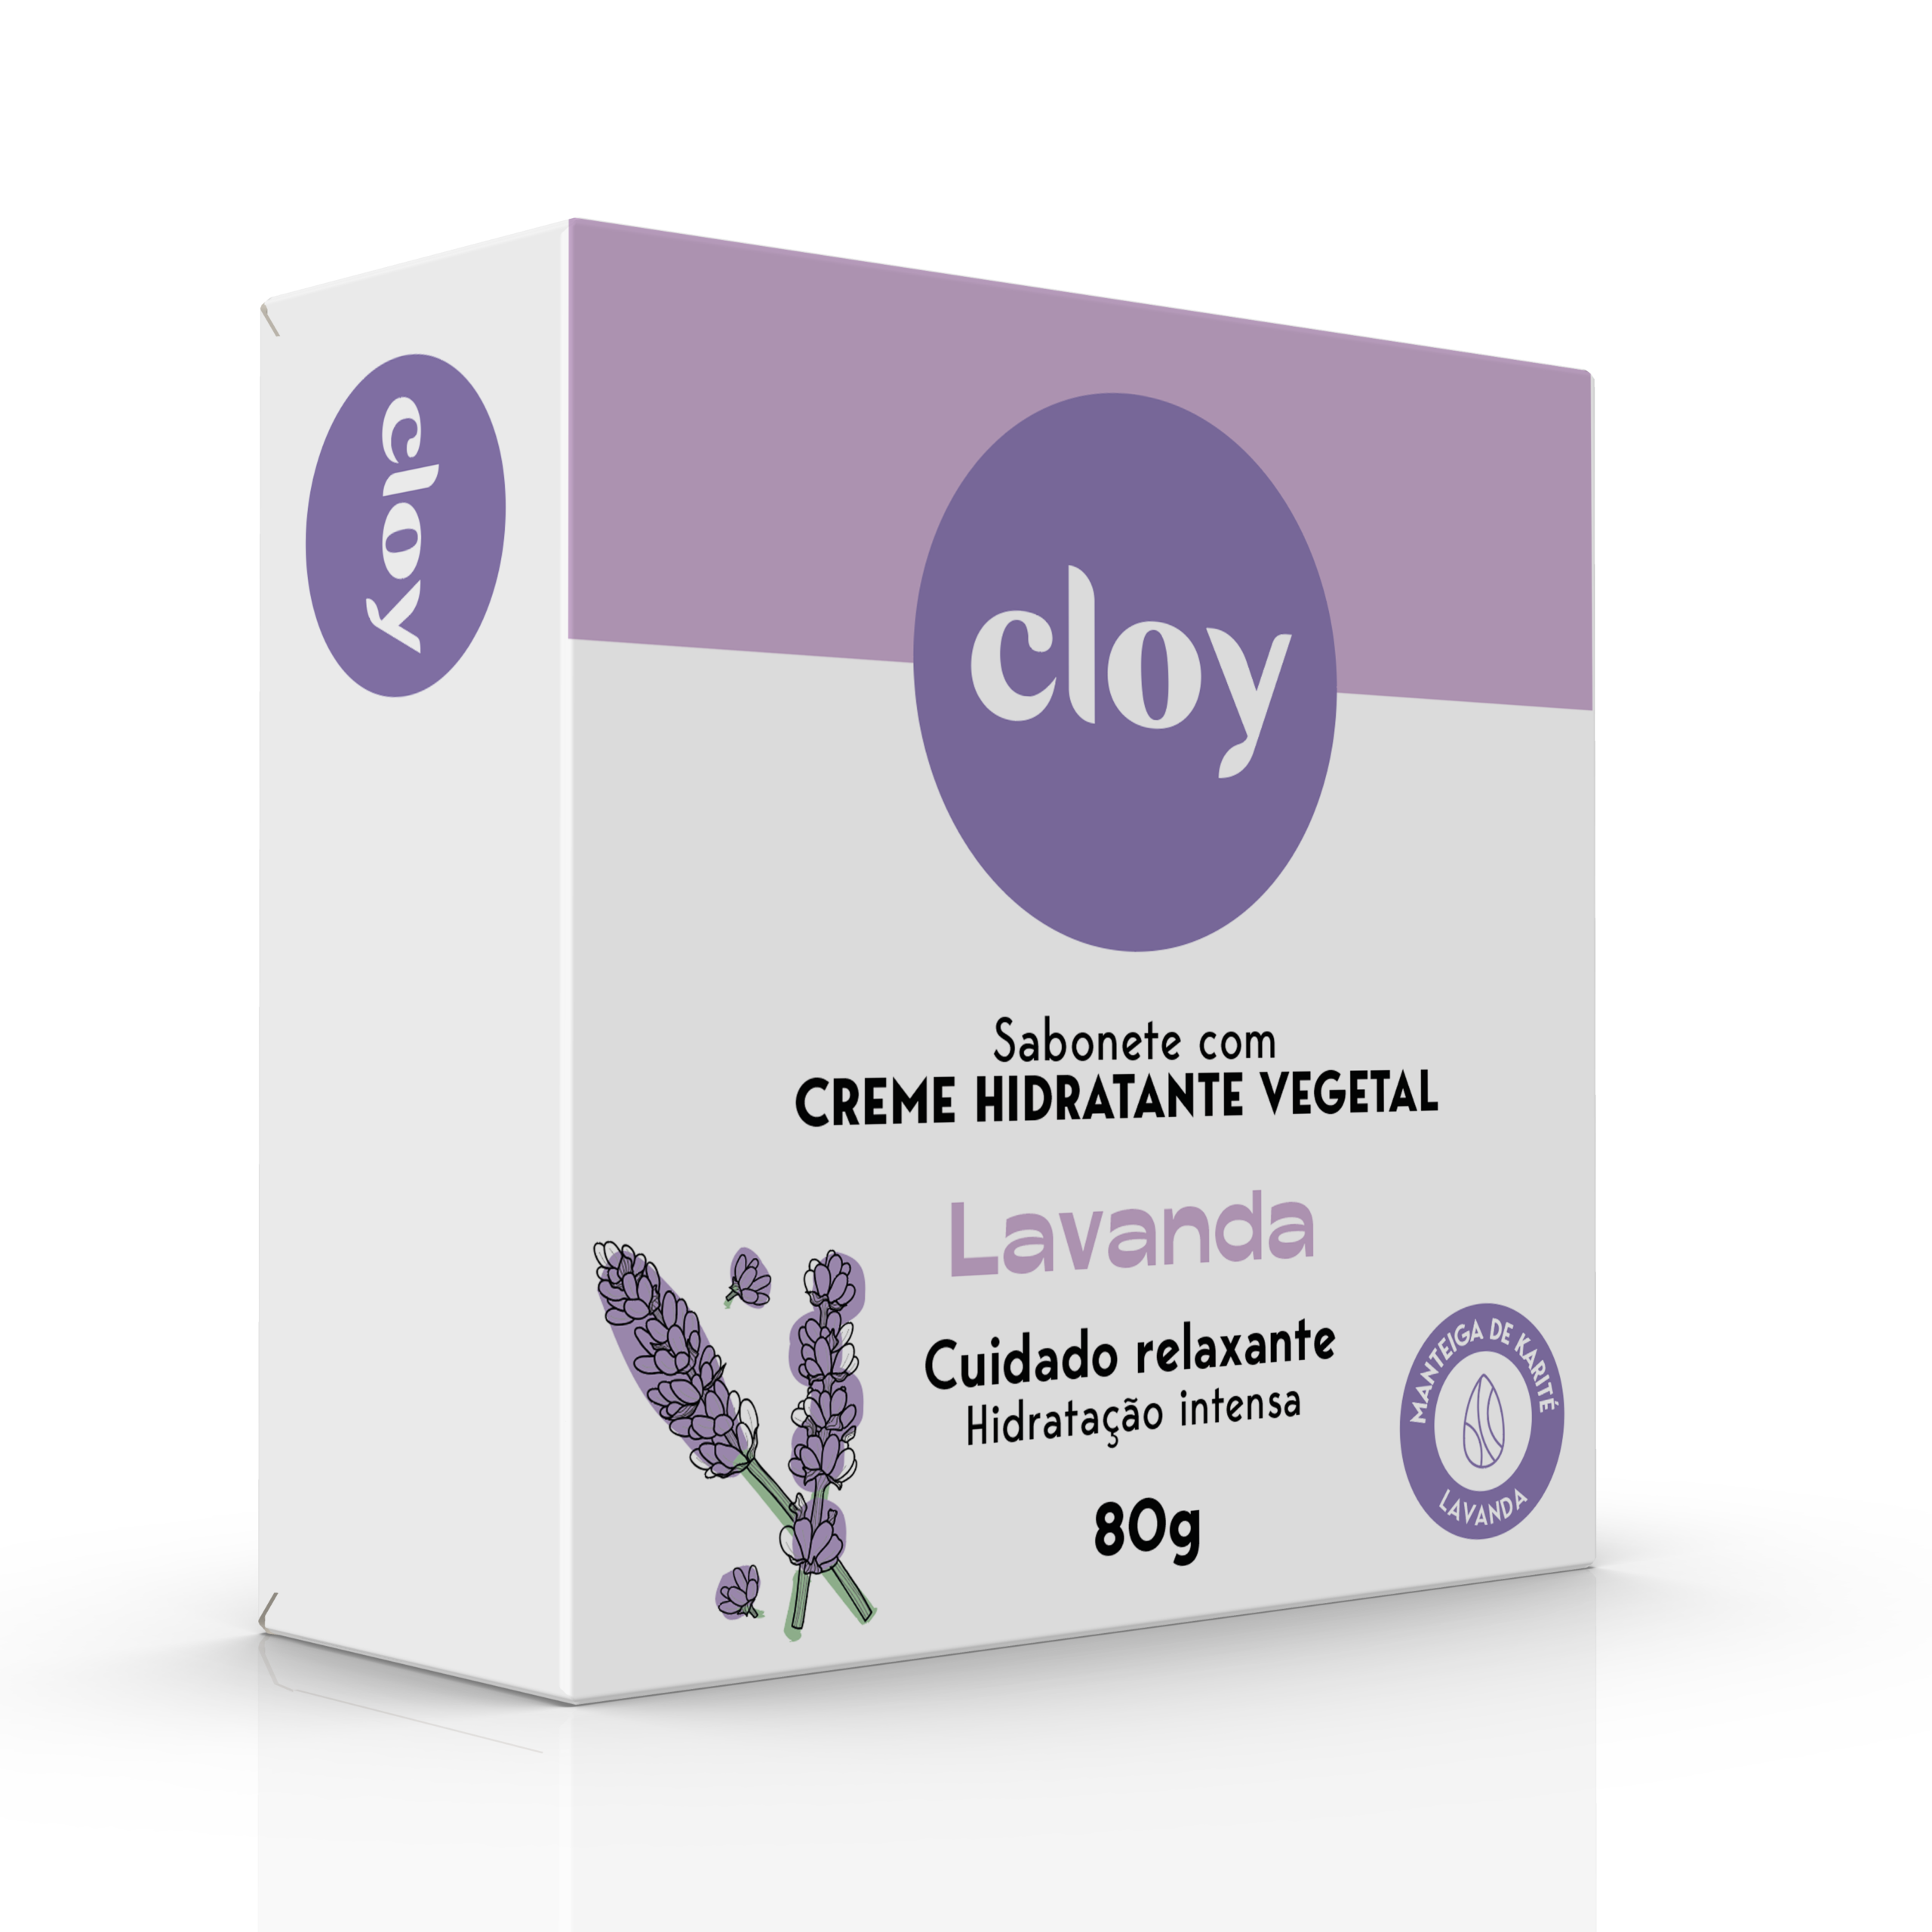 Cloy-Sintonize-o-seu-corpo-sabonete-LAVANDA-80G-frente